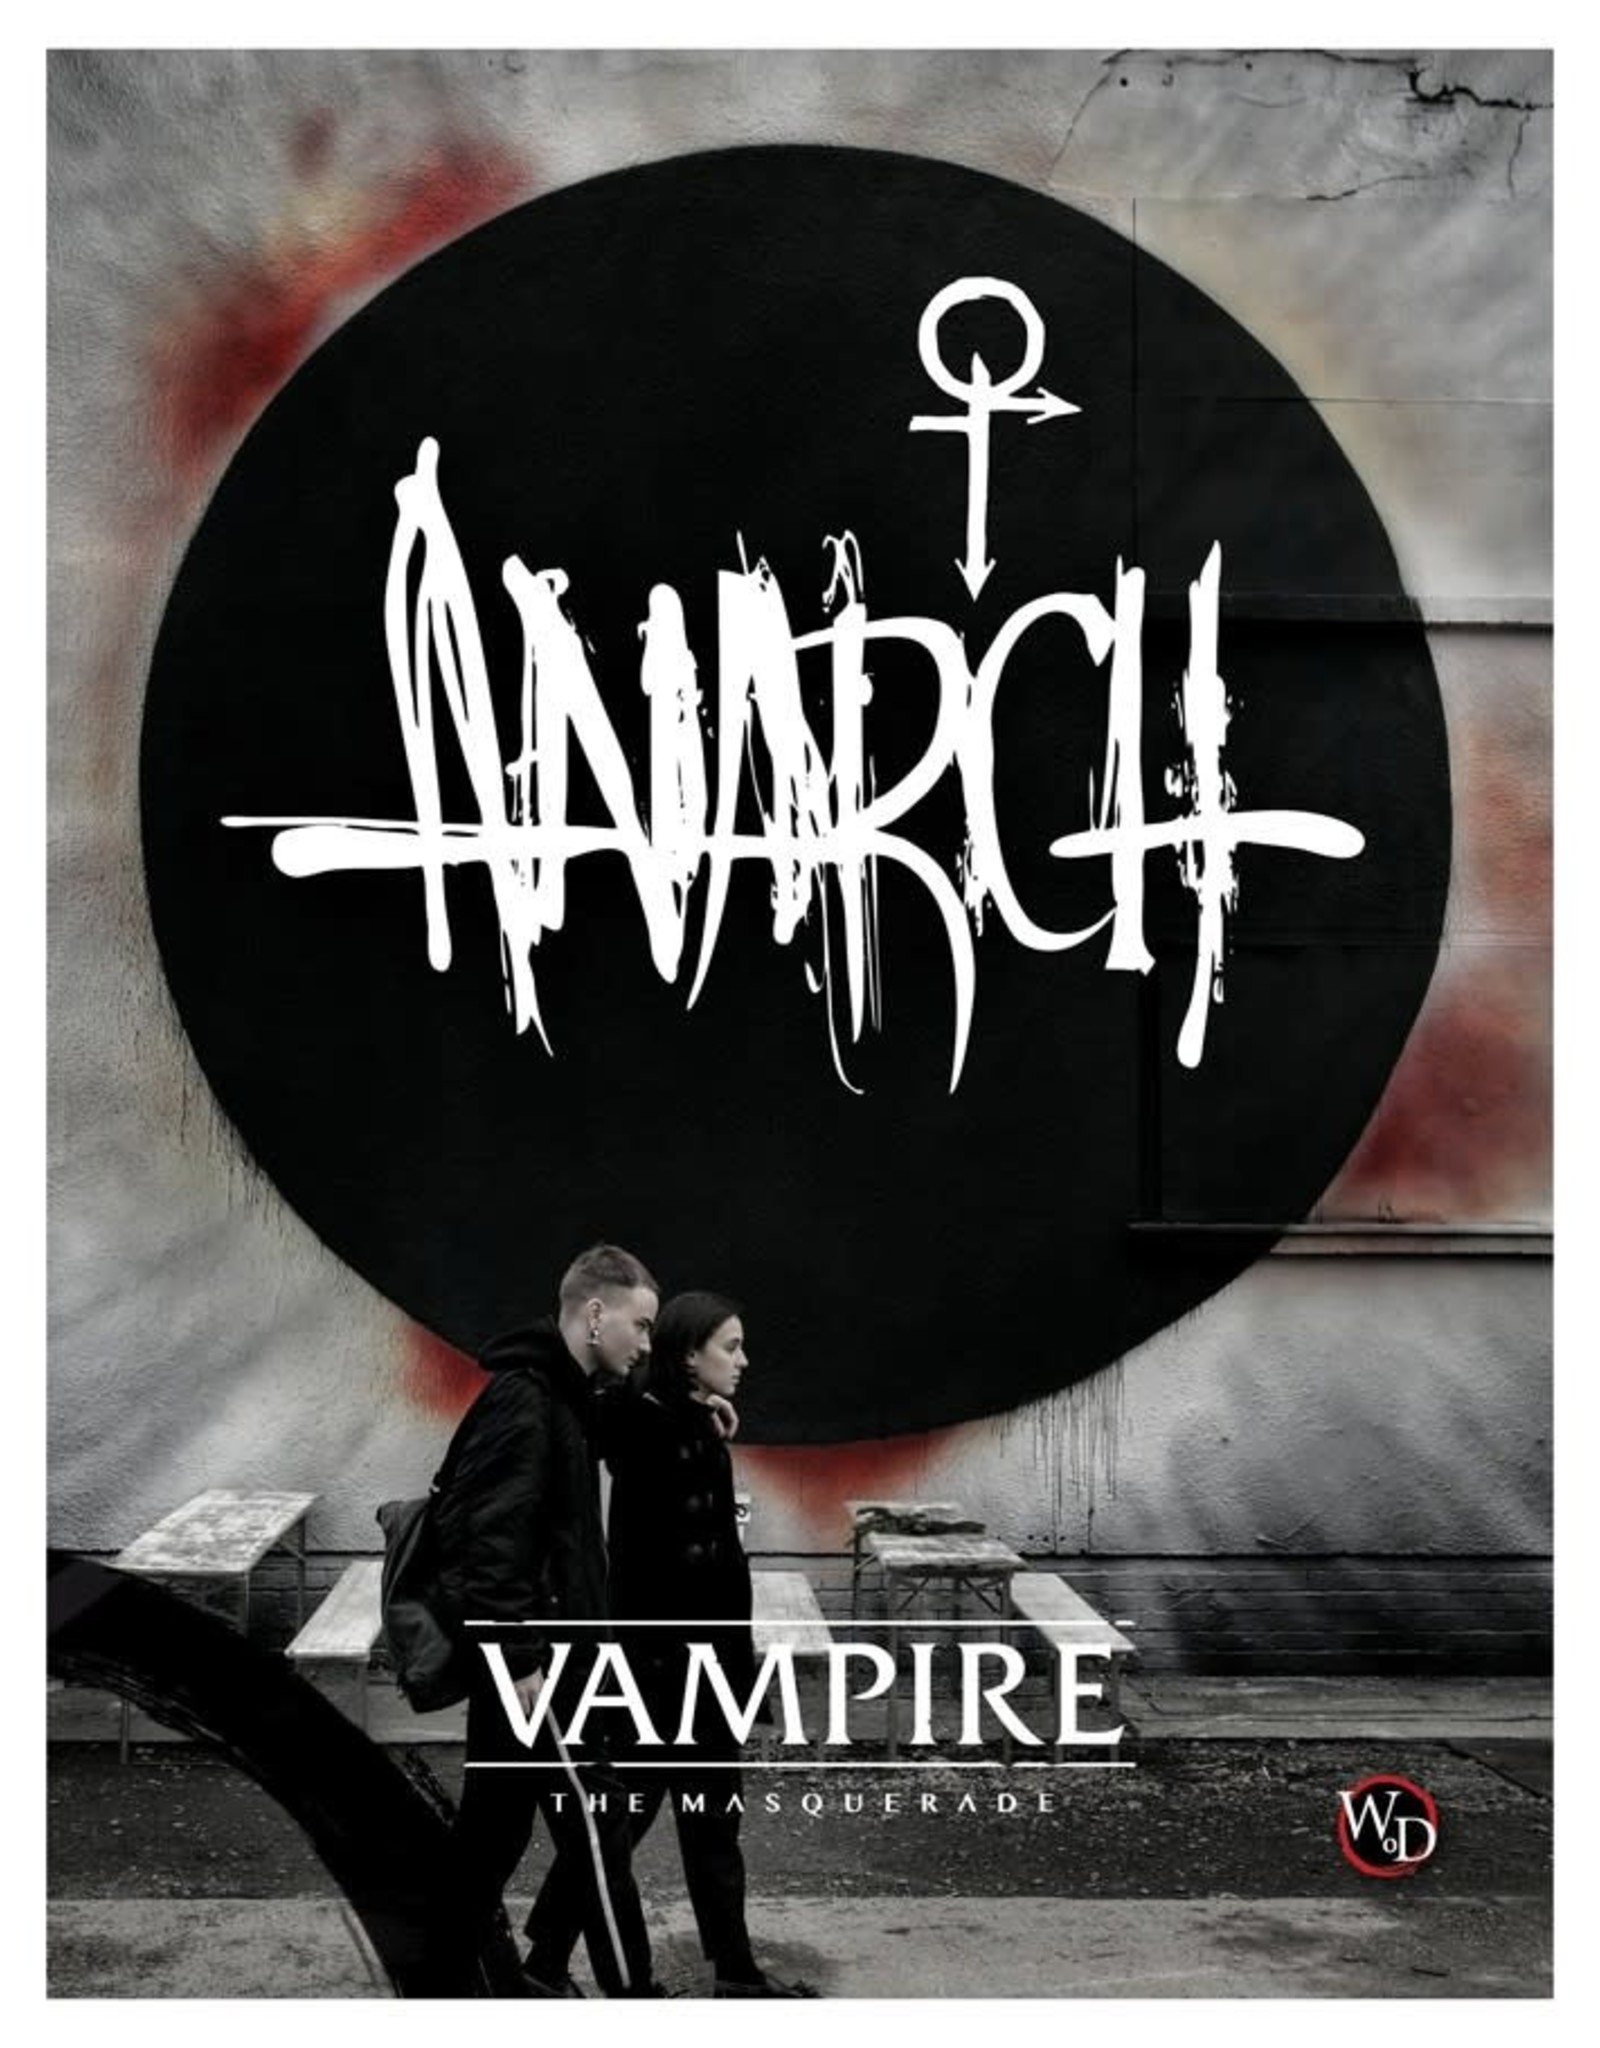 Renegade Vampire: The Masquerade 5E - Anarch